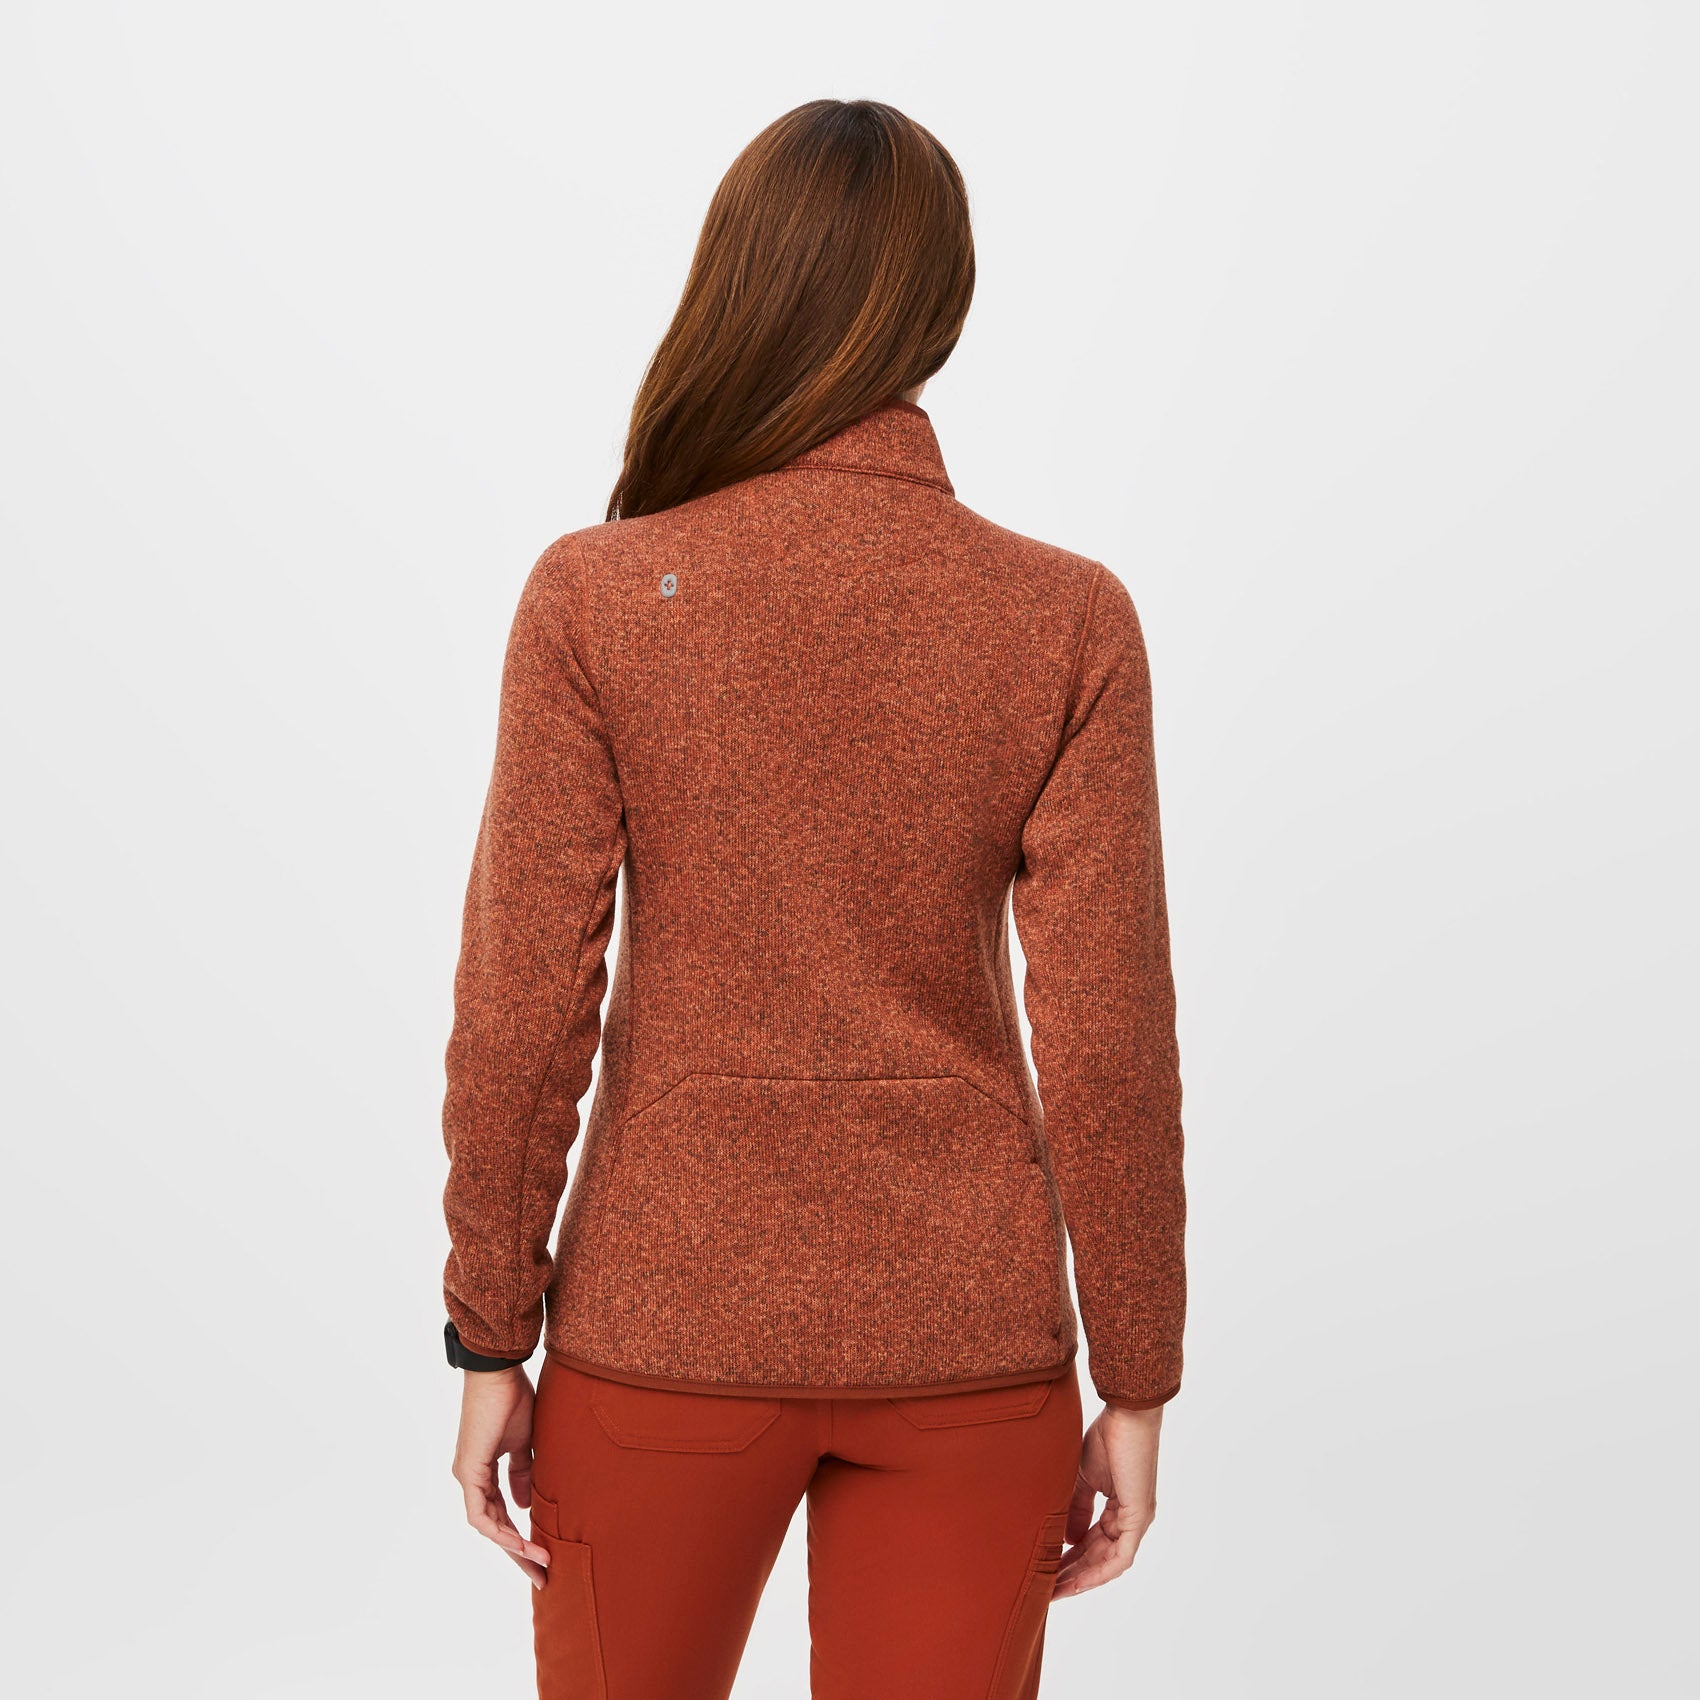 Women's On-Shift™ Sweater Knit Jacket - Heather Auburn · FIGS